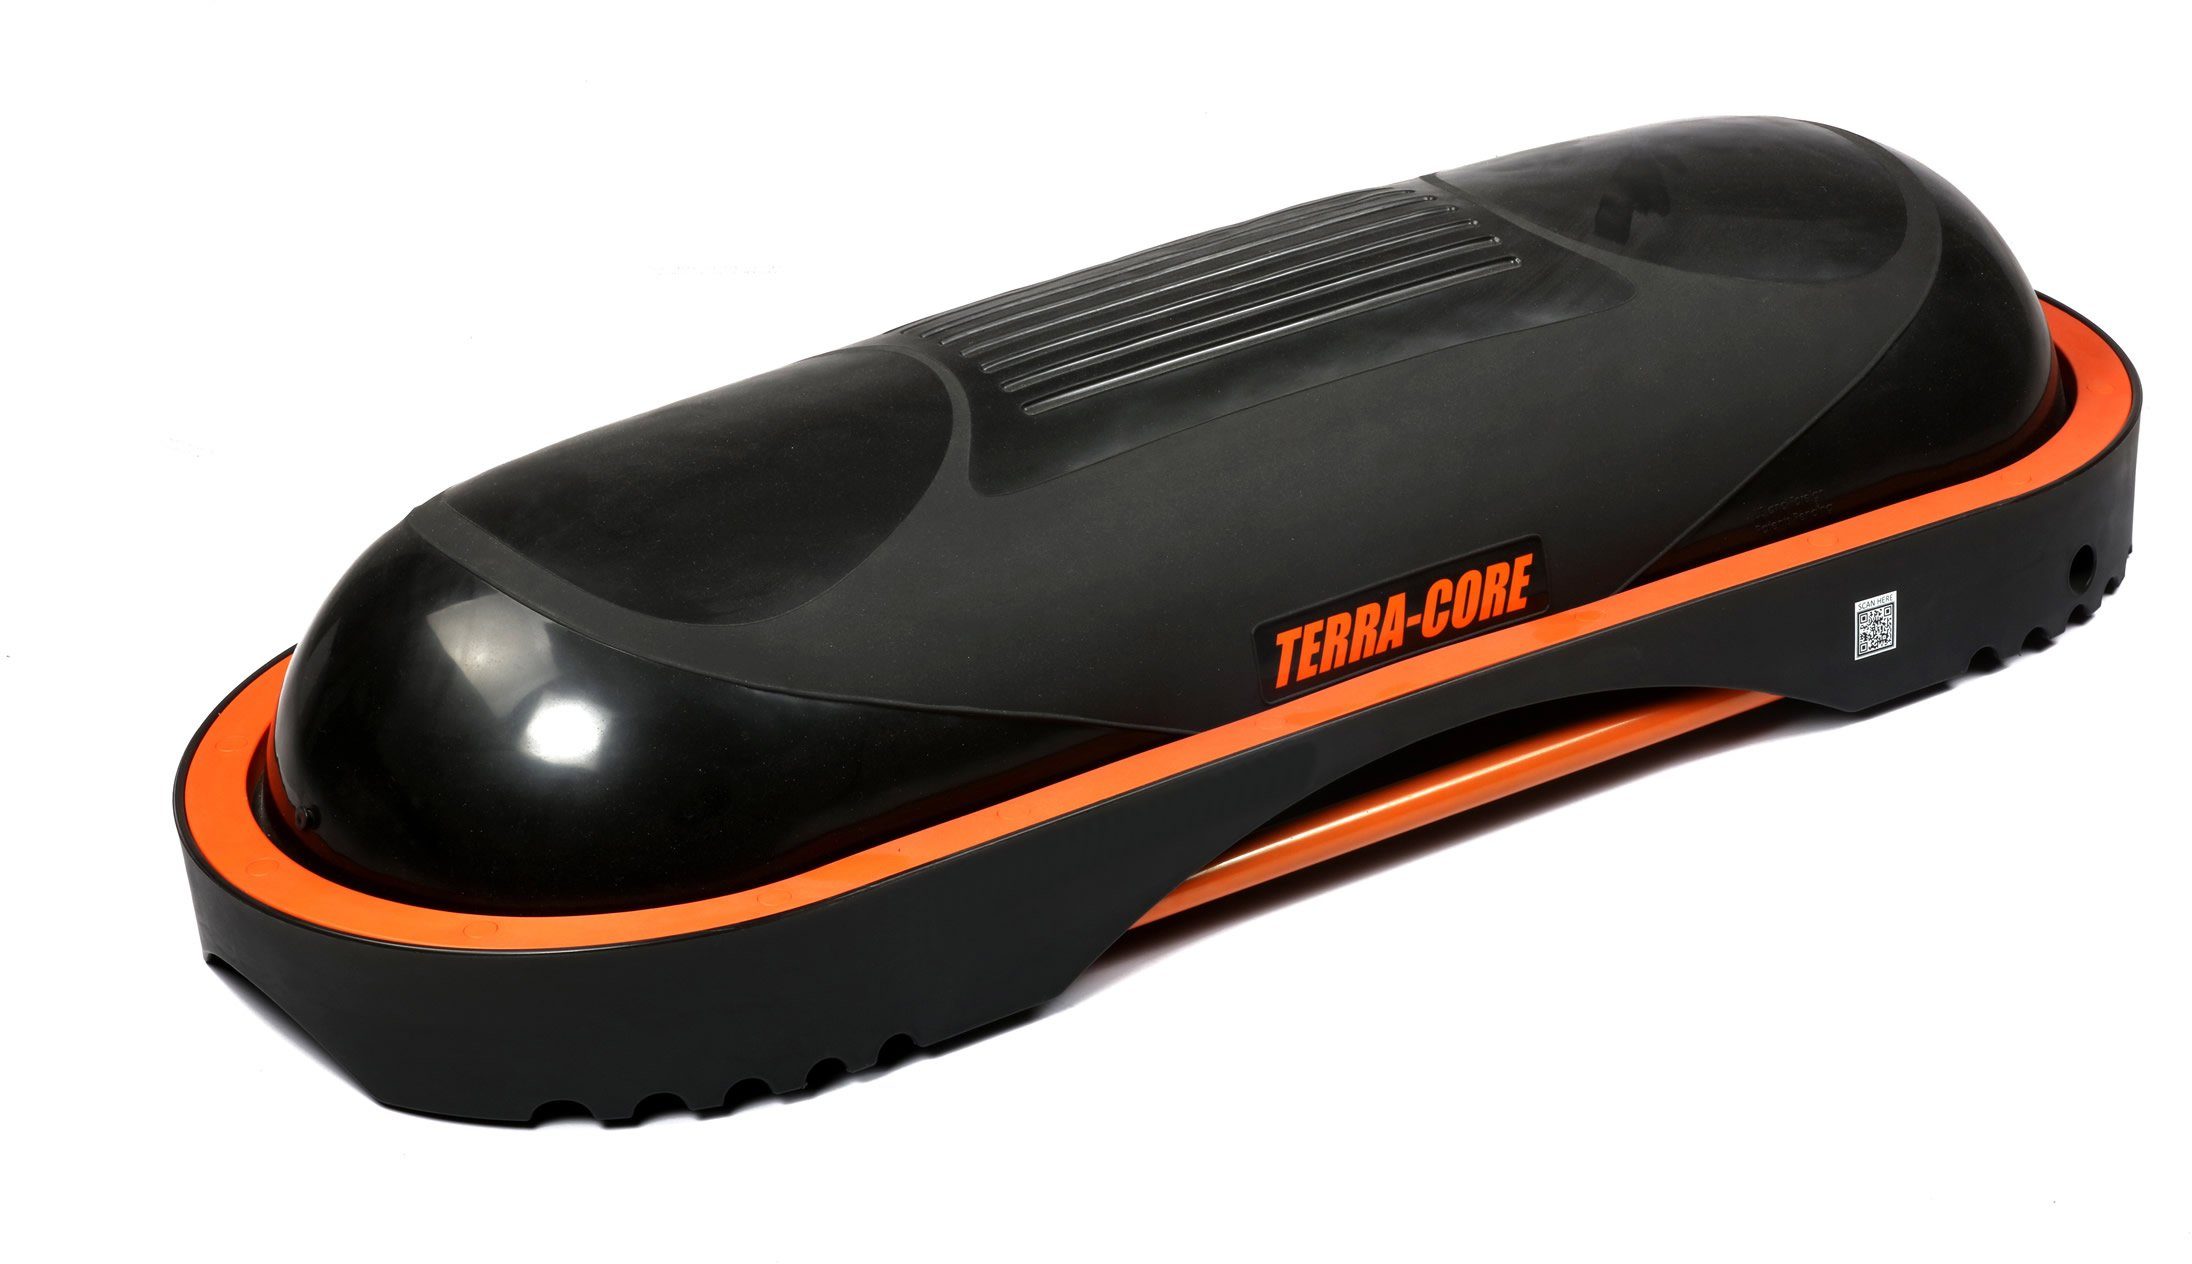 Terra Core Balancetrainer Stepp Core, Workout Terra Board und Bench, Universelle Balance